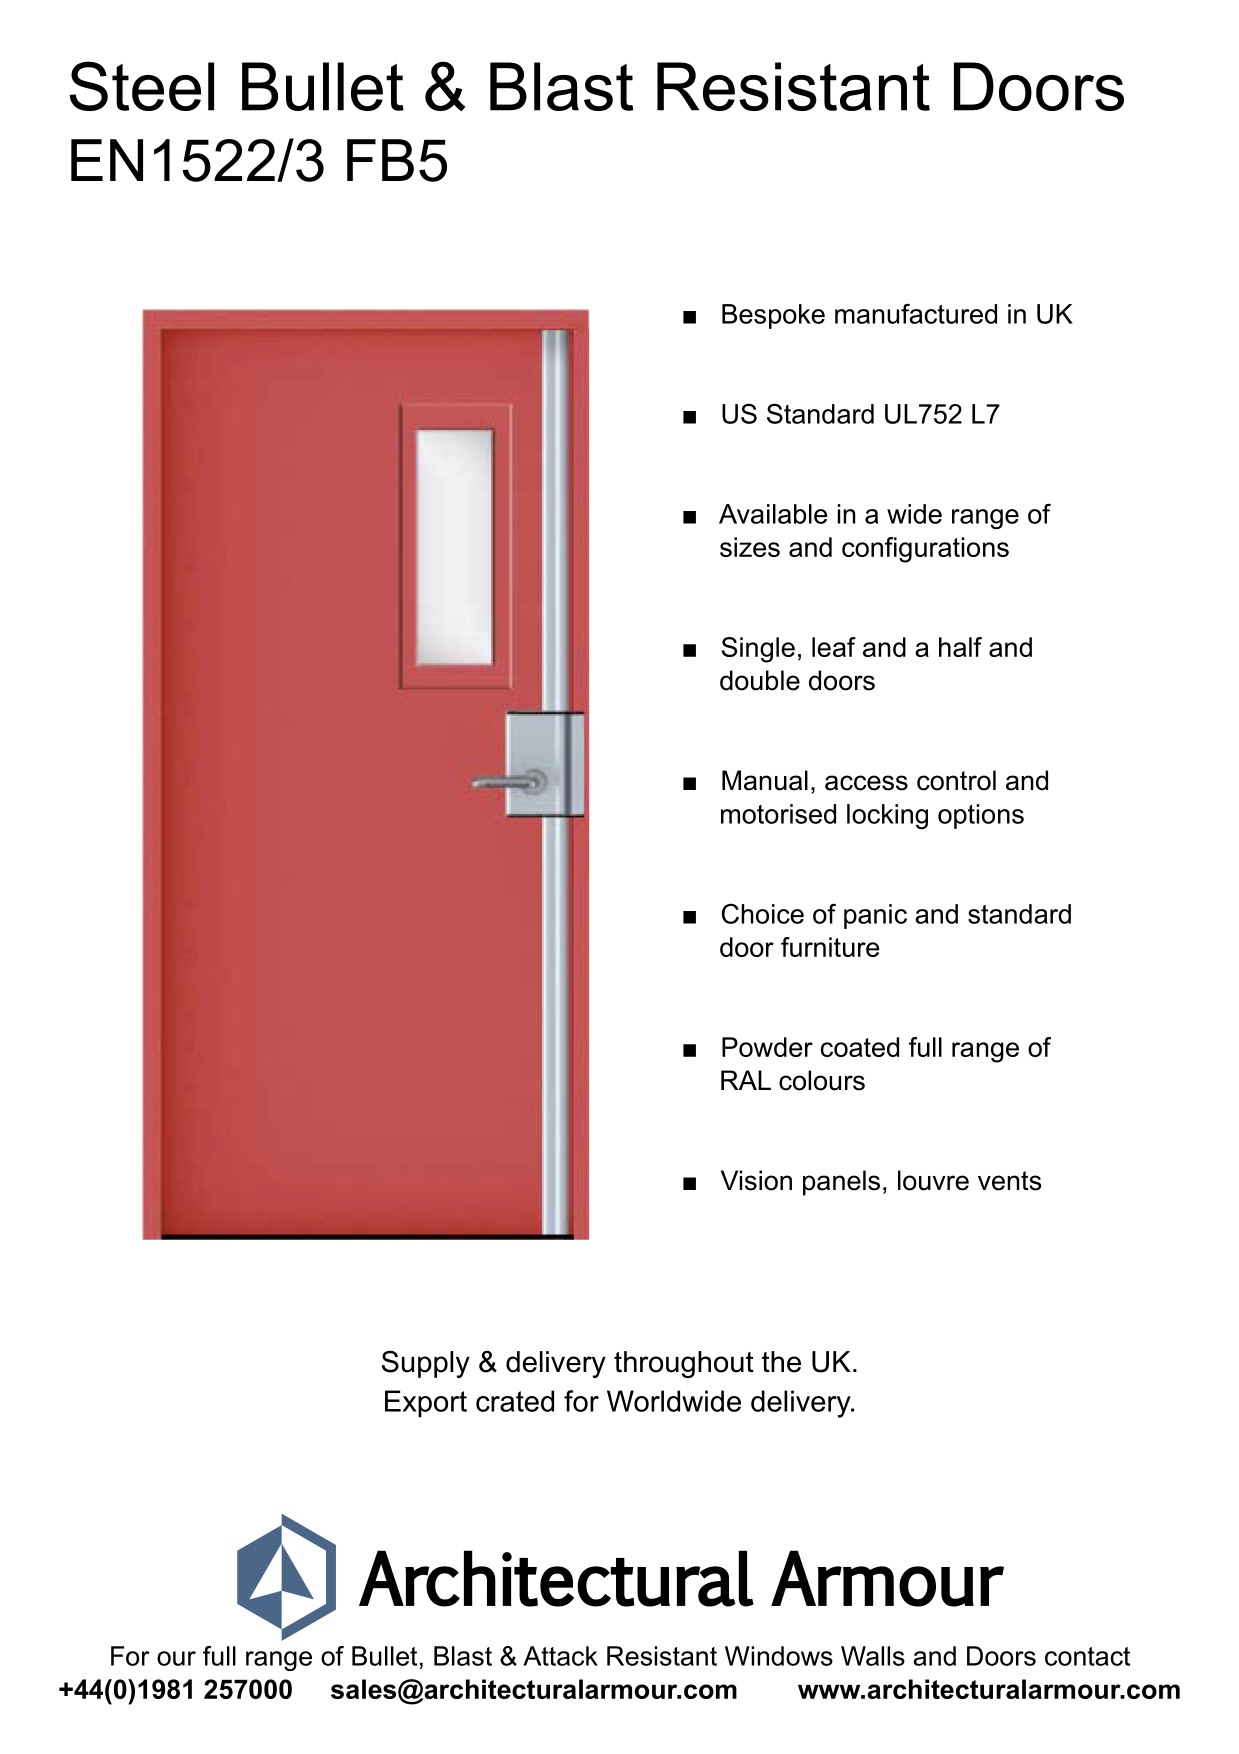 EN1522-3-FB5-Single-Slim-Vision-Panel-Blast-and-Bullet-Resistant-Steel-Door